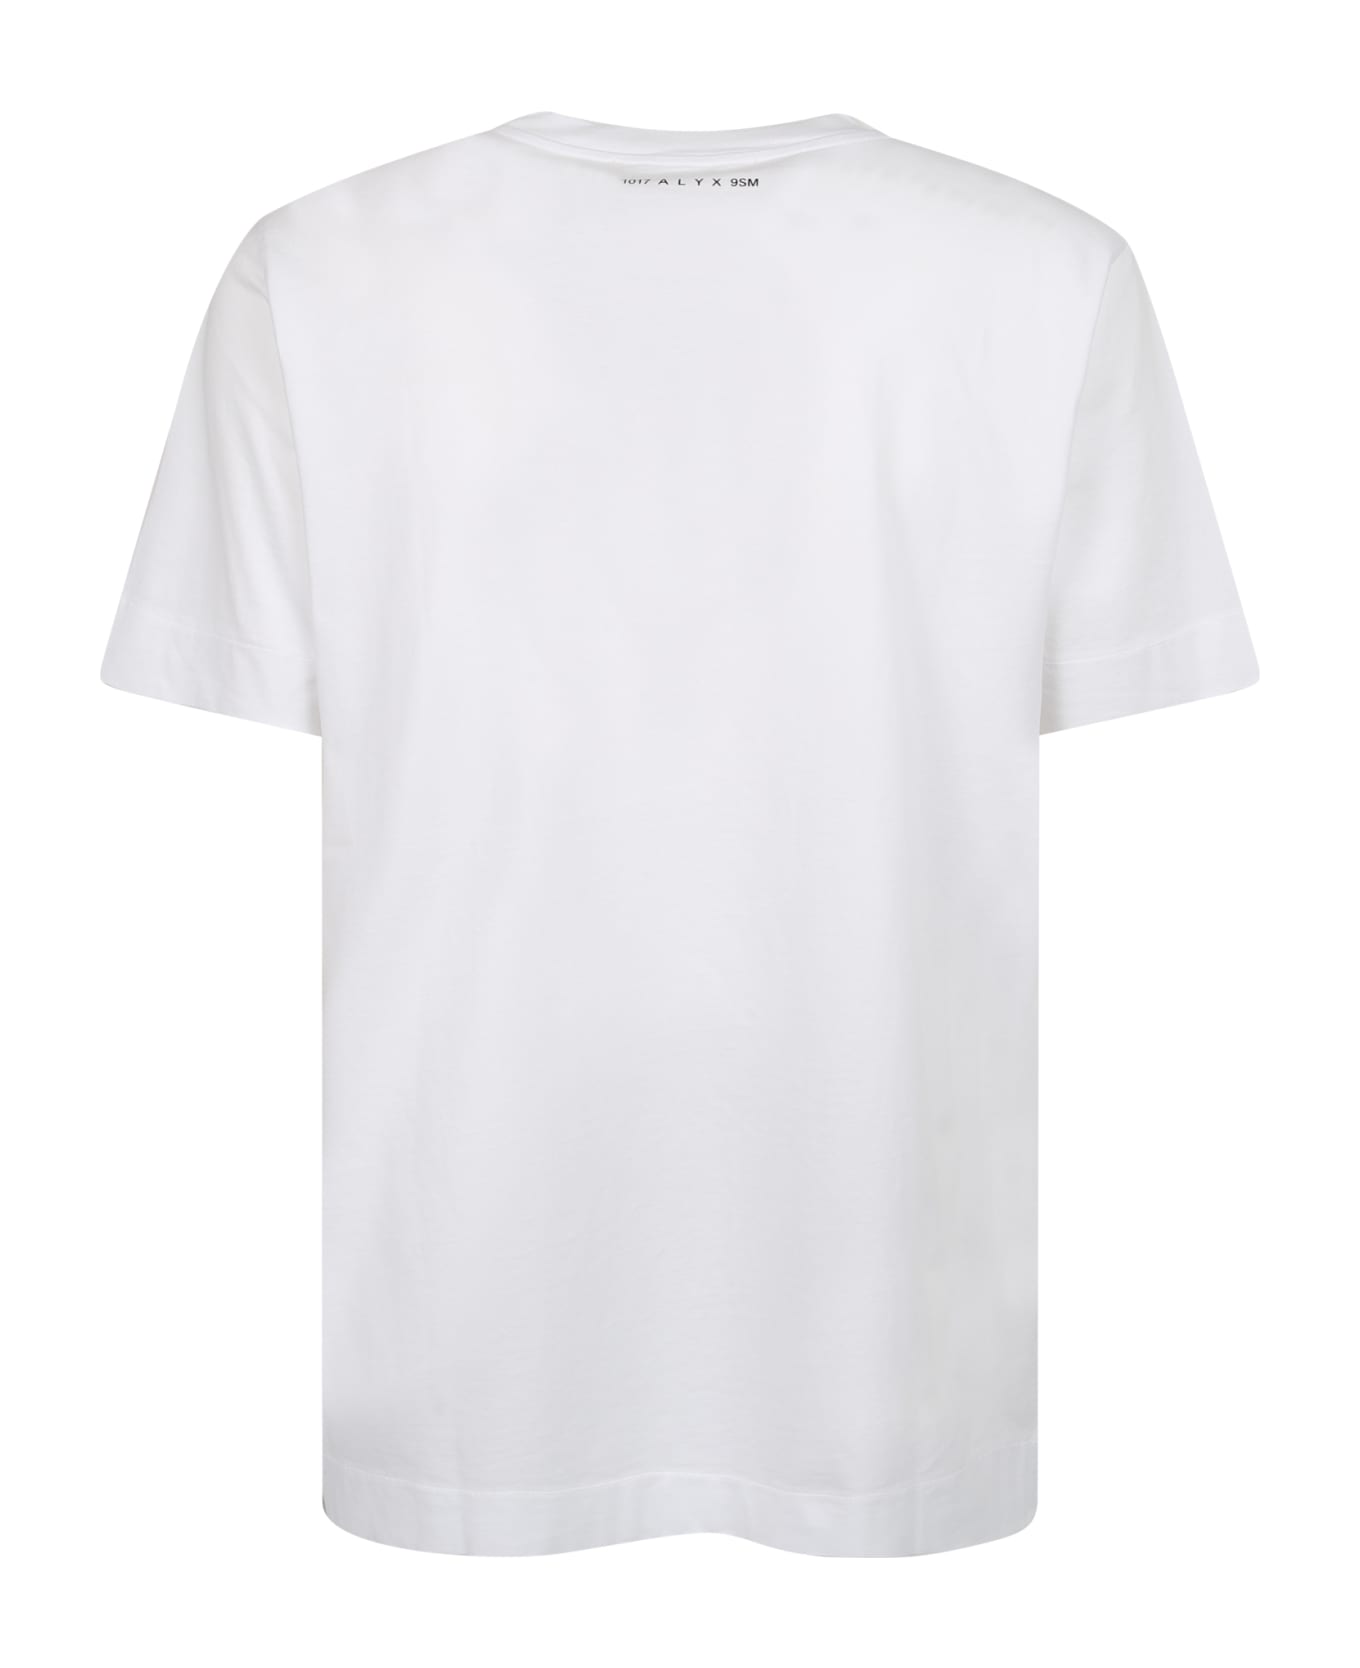 1017 ALYX 9SM Cotton T-shirt - White